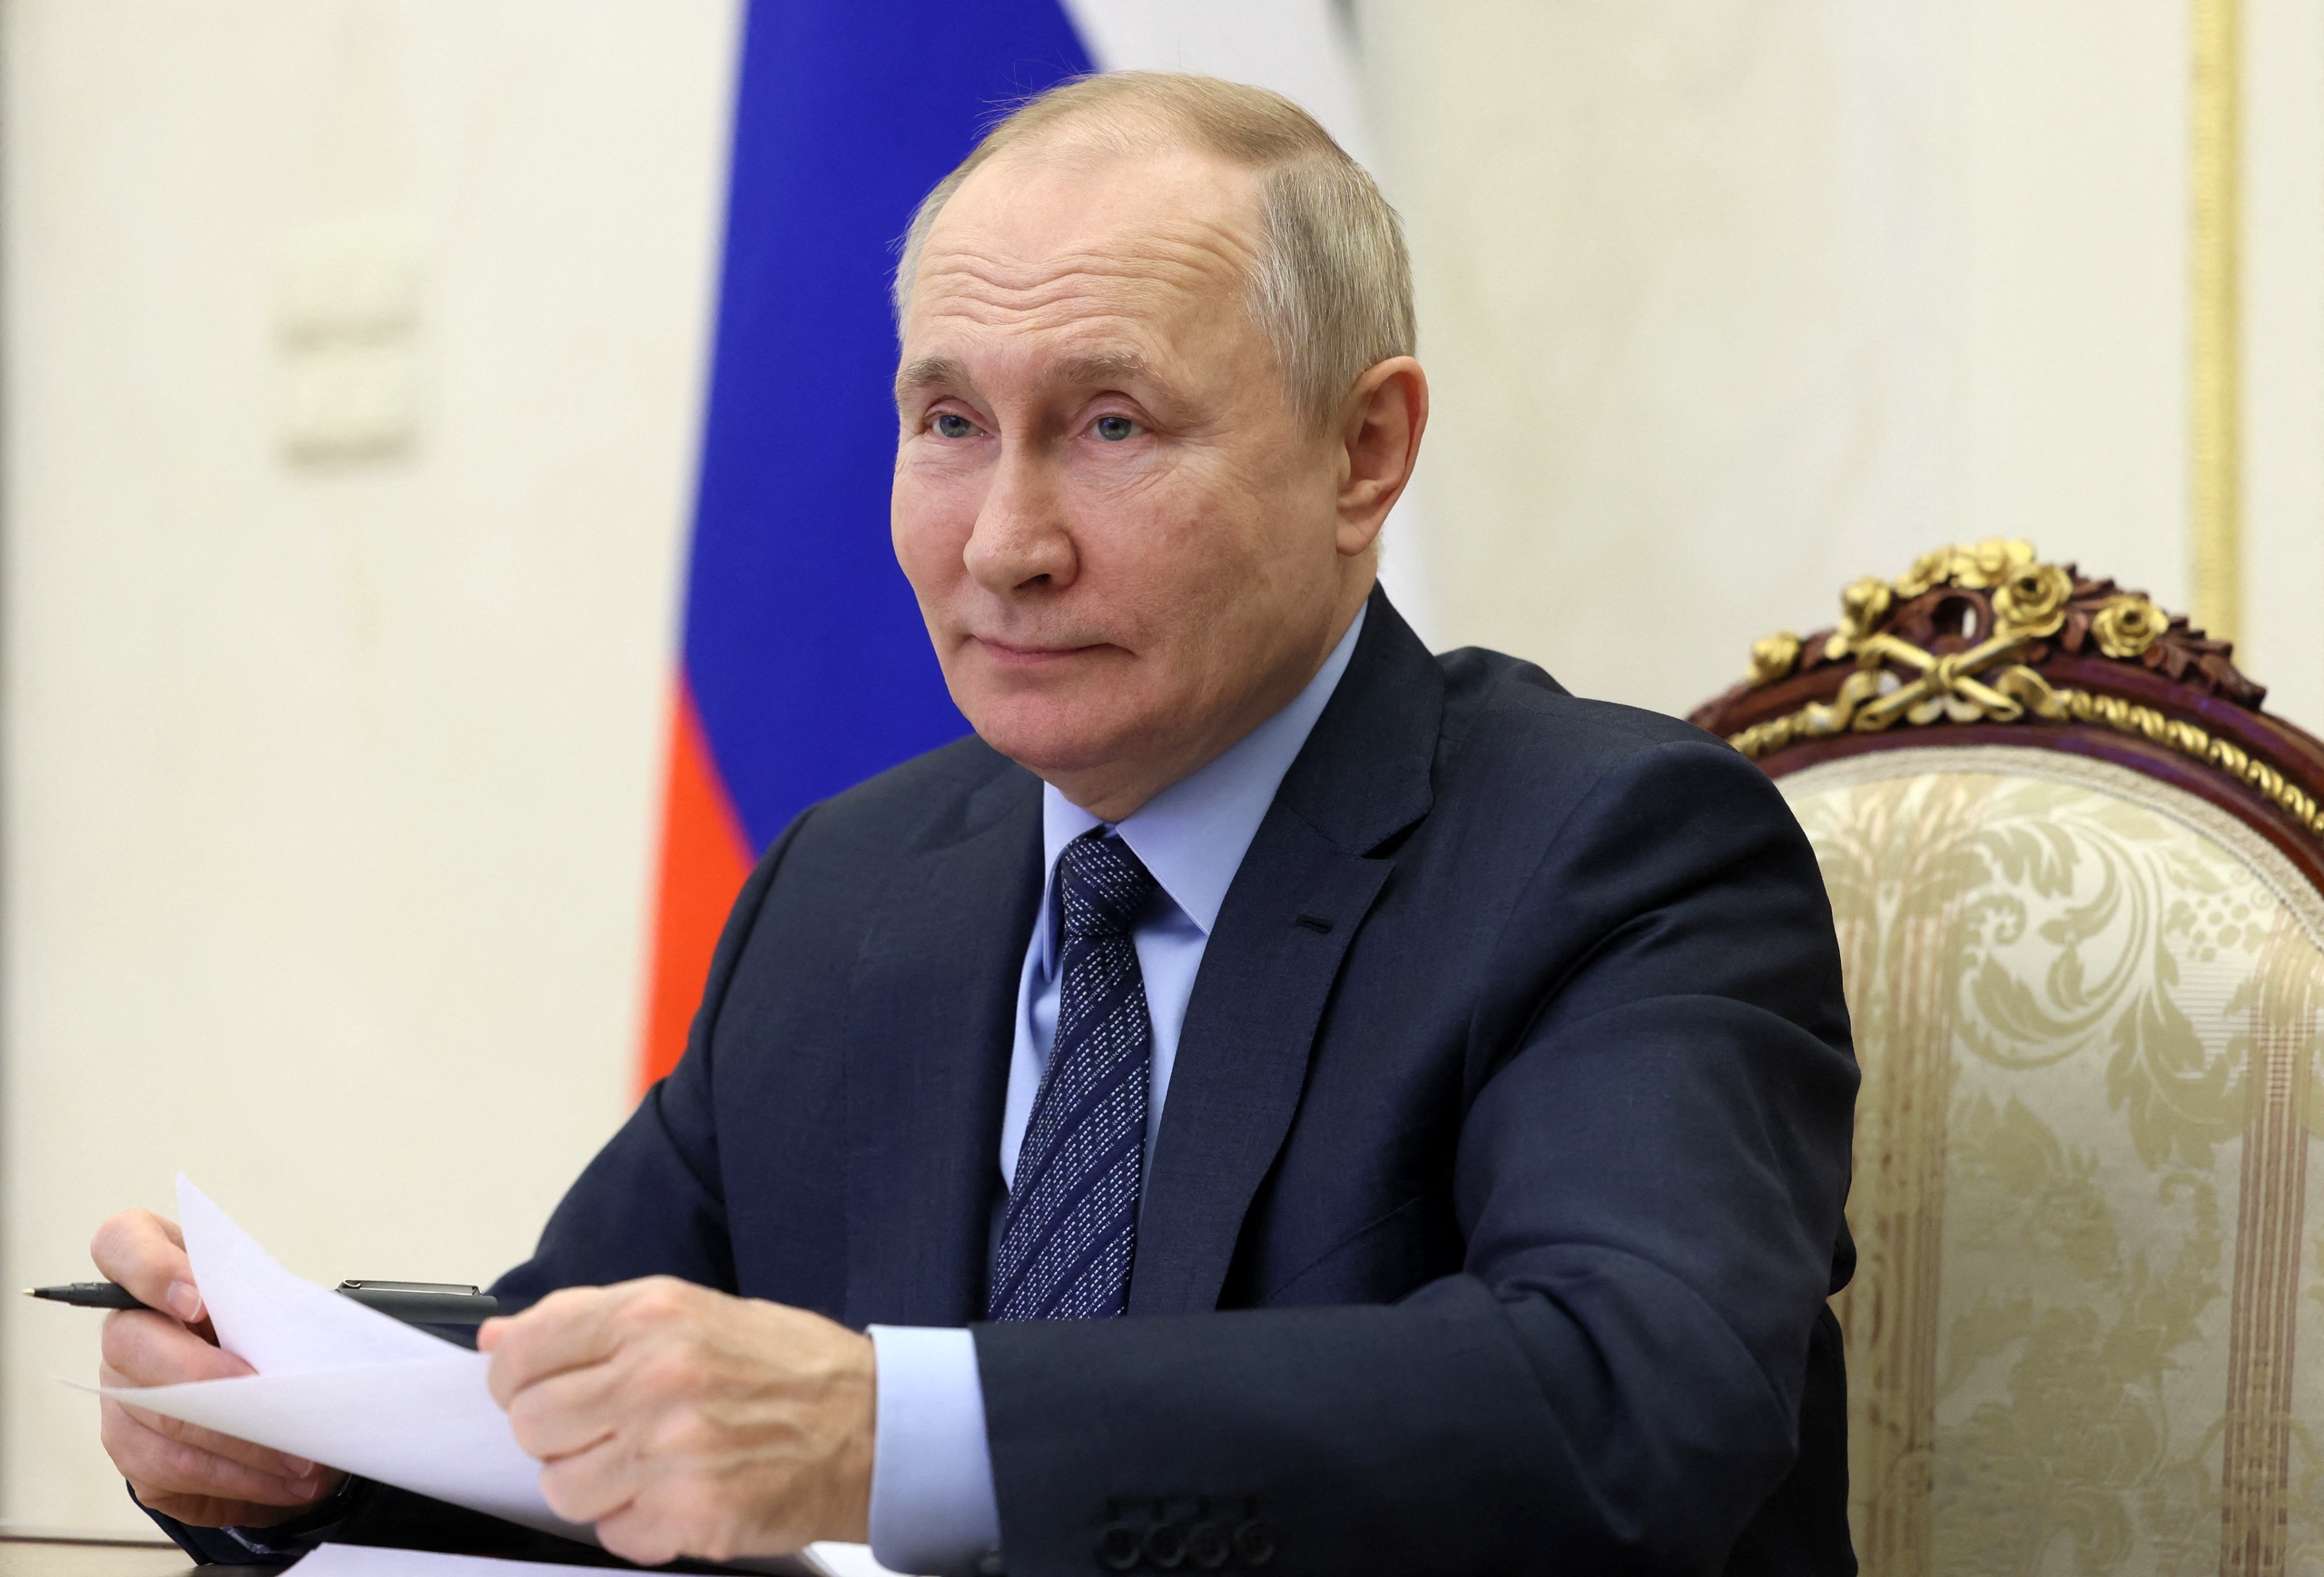 President Vladimir Poetin van Rusland zal vast niet ontevreden zijn met de enorme stijging van lng-export naar de EU.